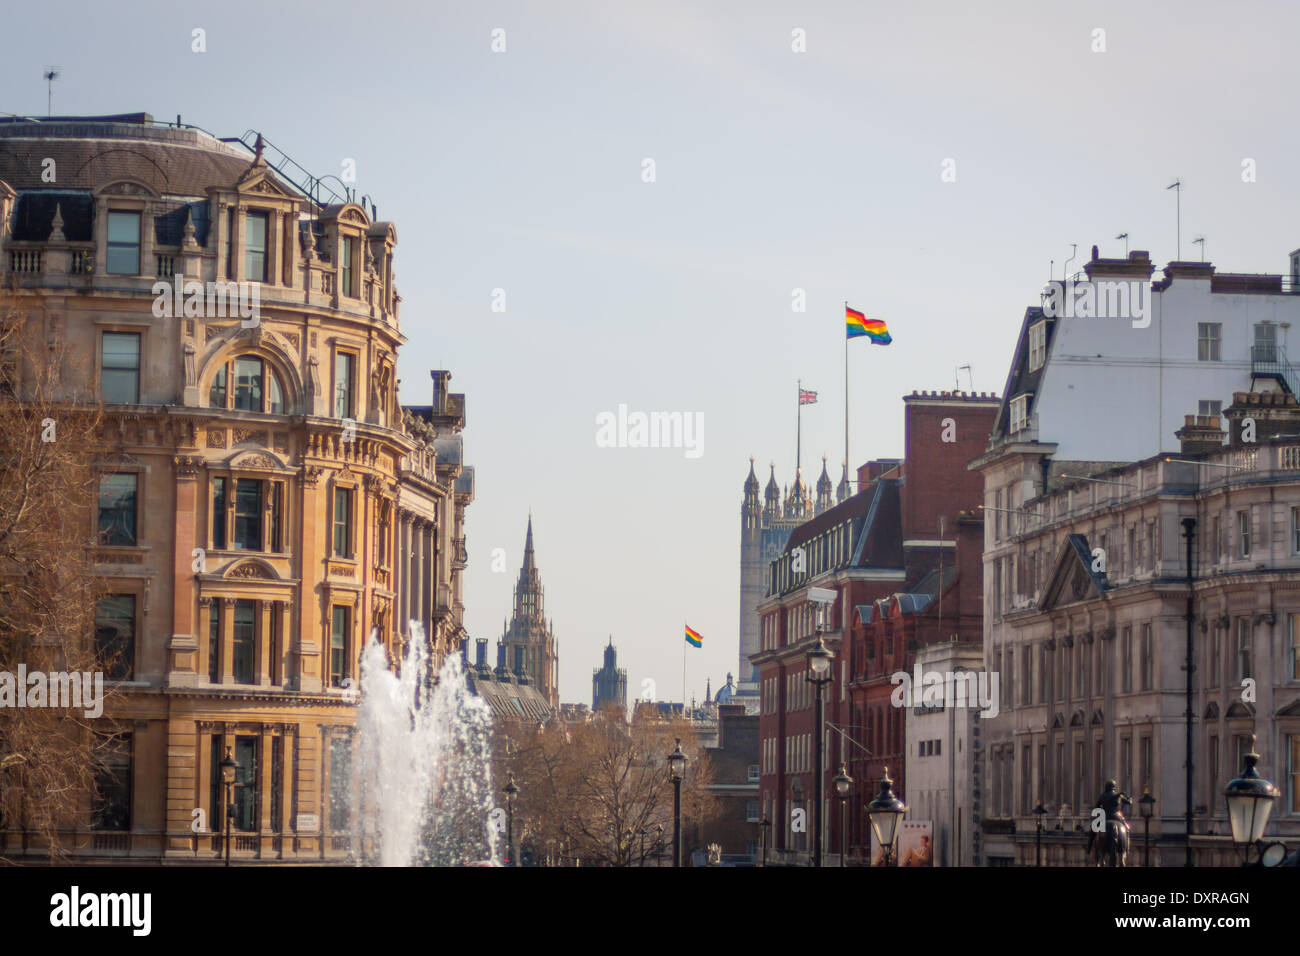 London, UK . Mar 29, 2014. Les immeubles de bureaux du cabinet à Whitehall battant le drapeau arc-en-ciel pour marquer l'égalité du mariage Crédit : Zefrog/Alamy Live News Banque D'Images